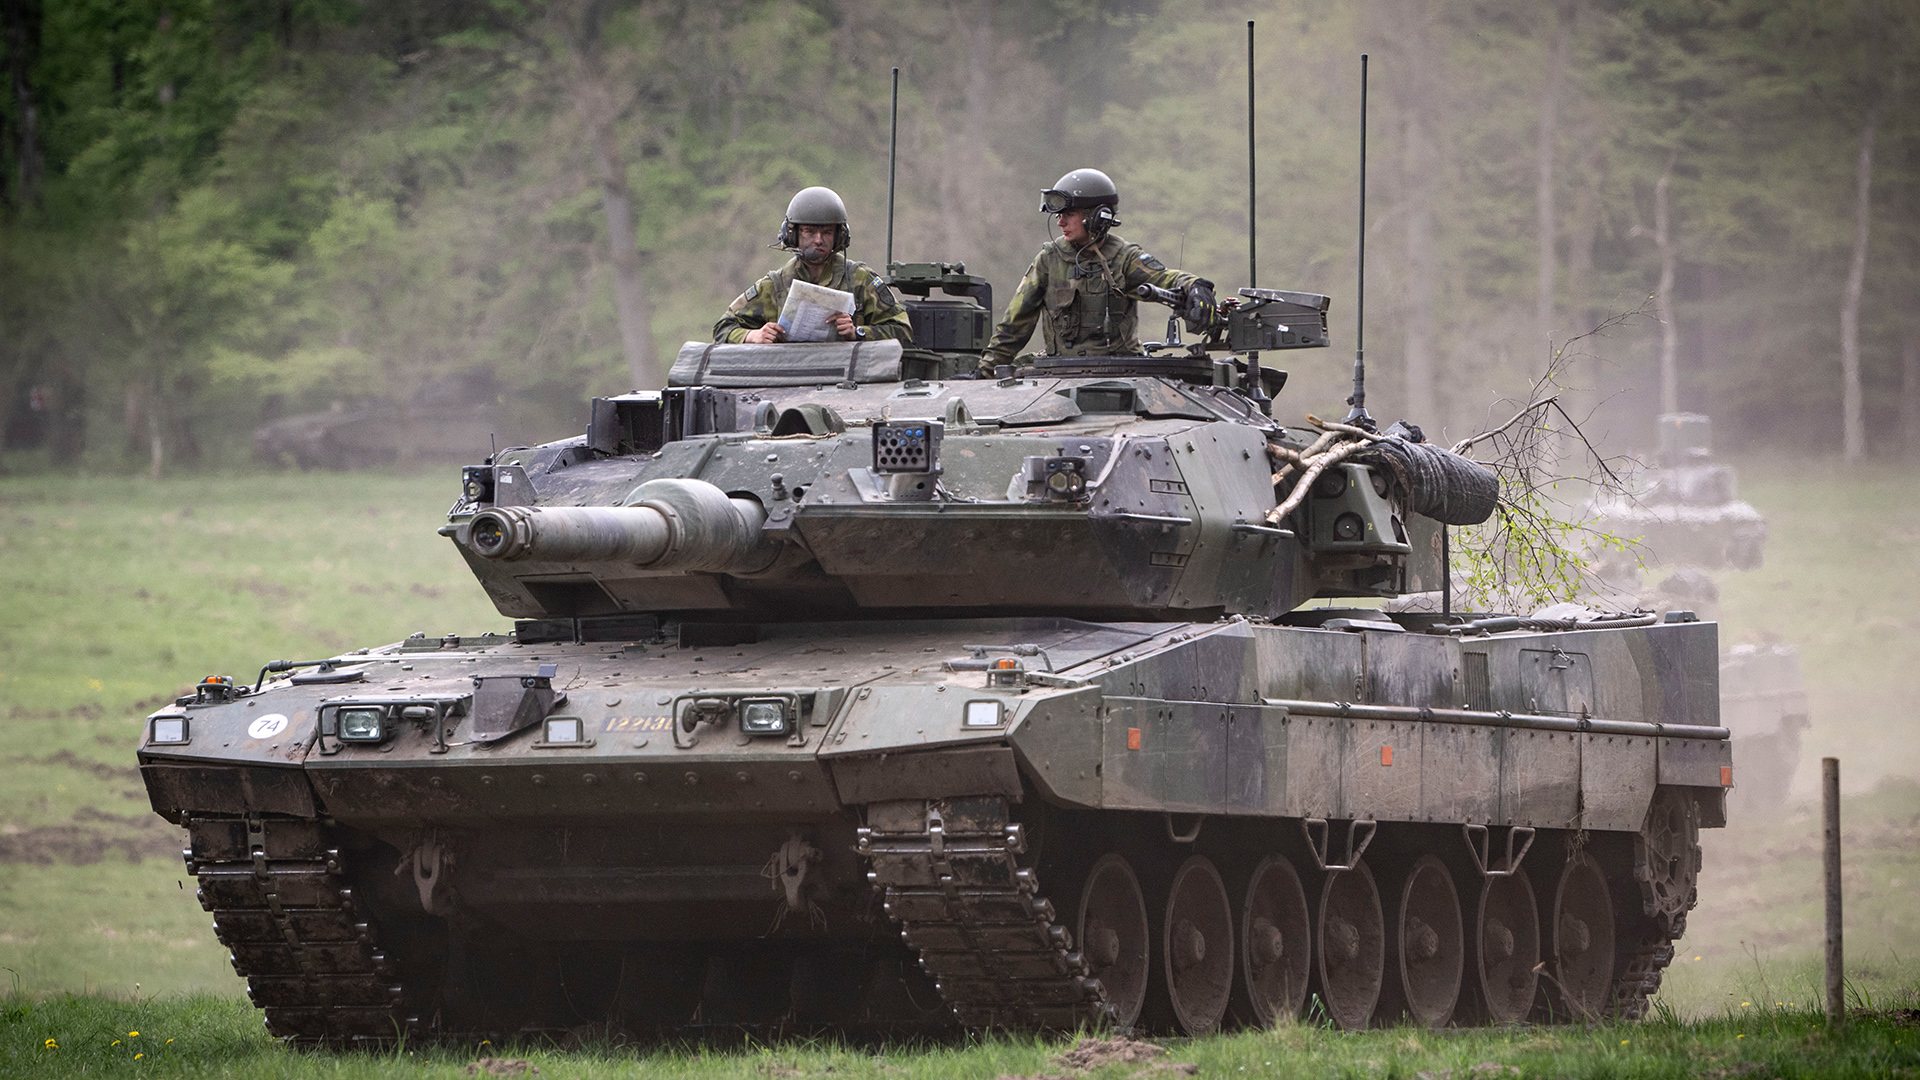 Ein Stridsvagn 122 Panzer | picture alliance / TT NYHETSBYR?